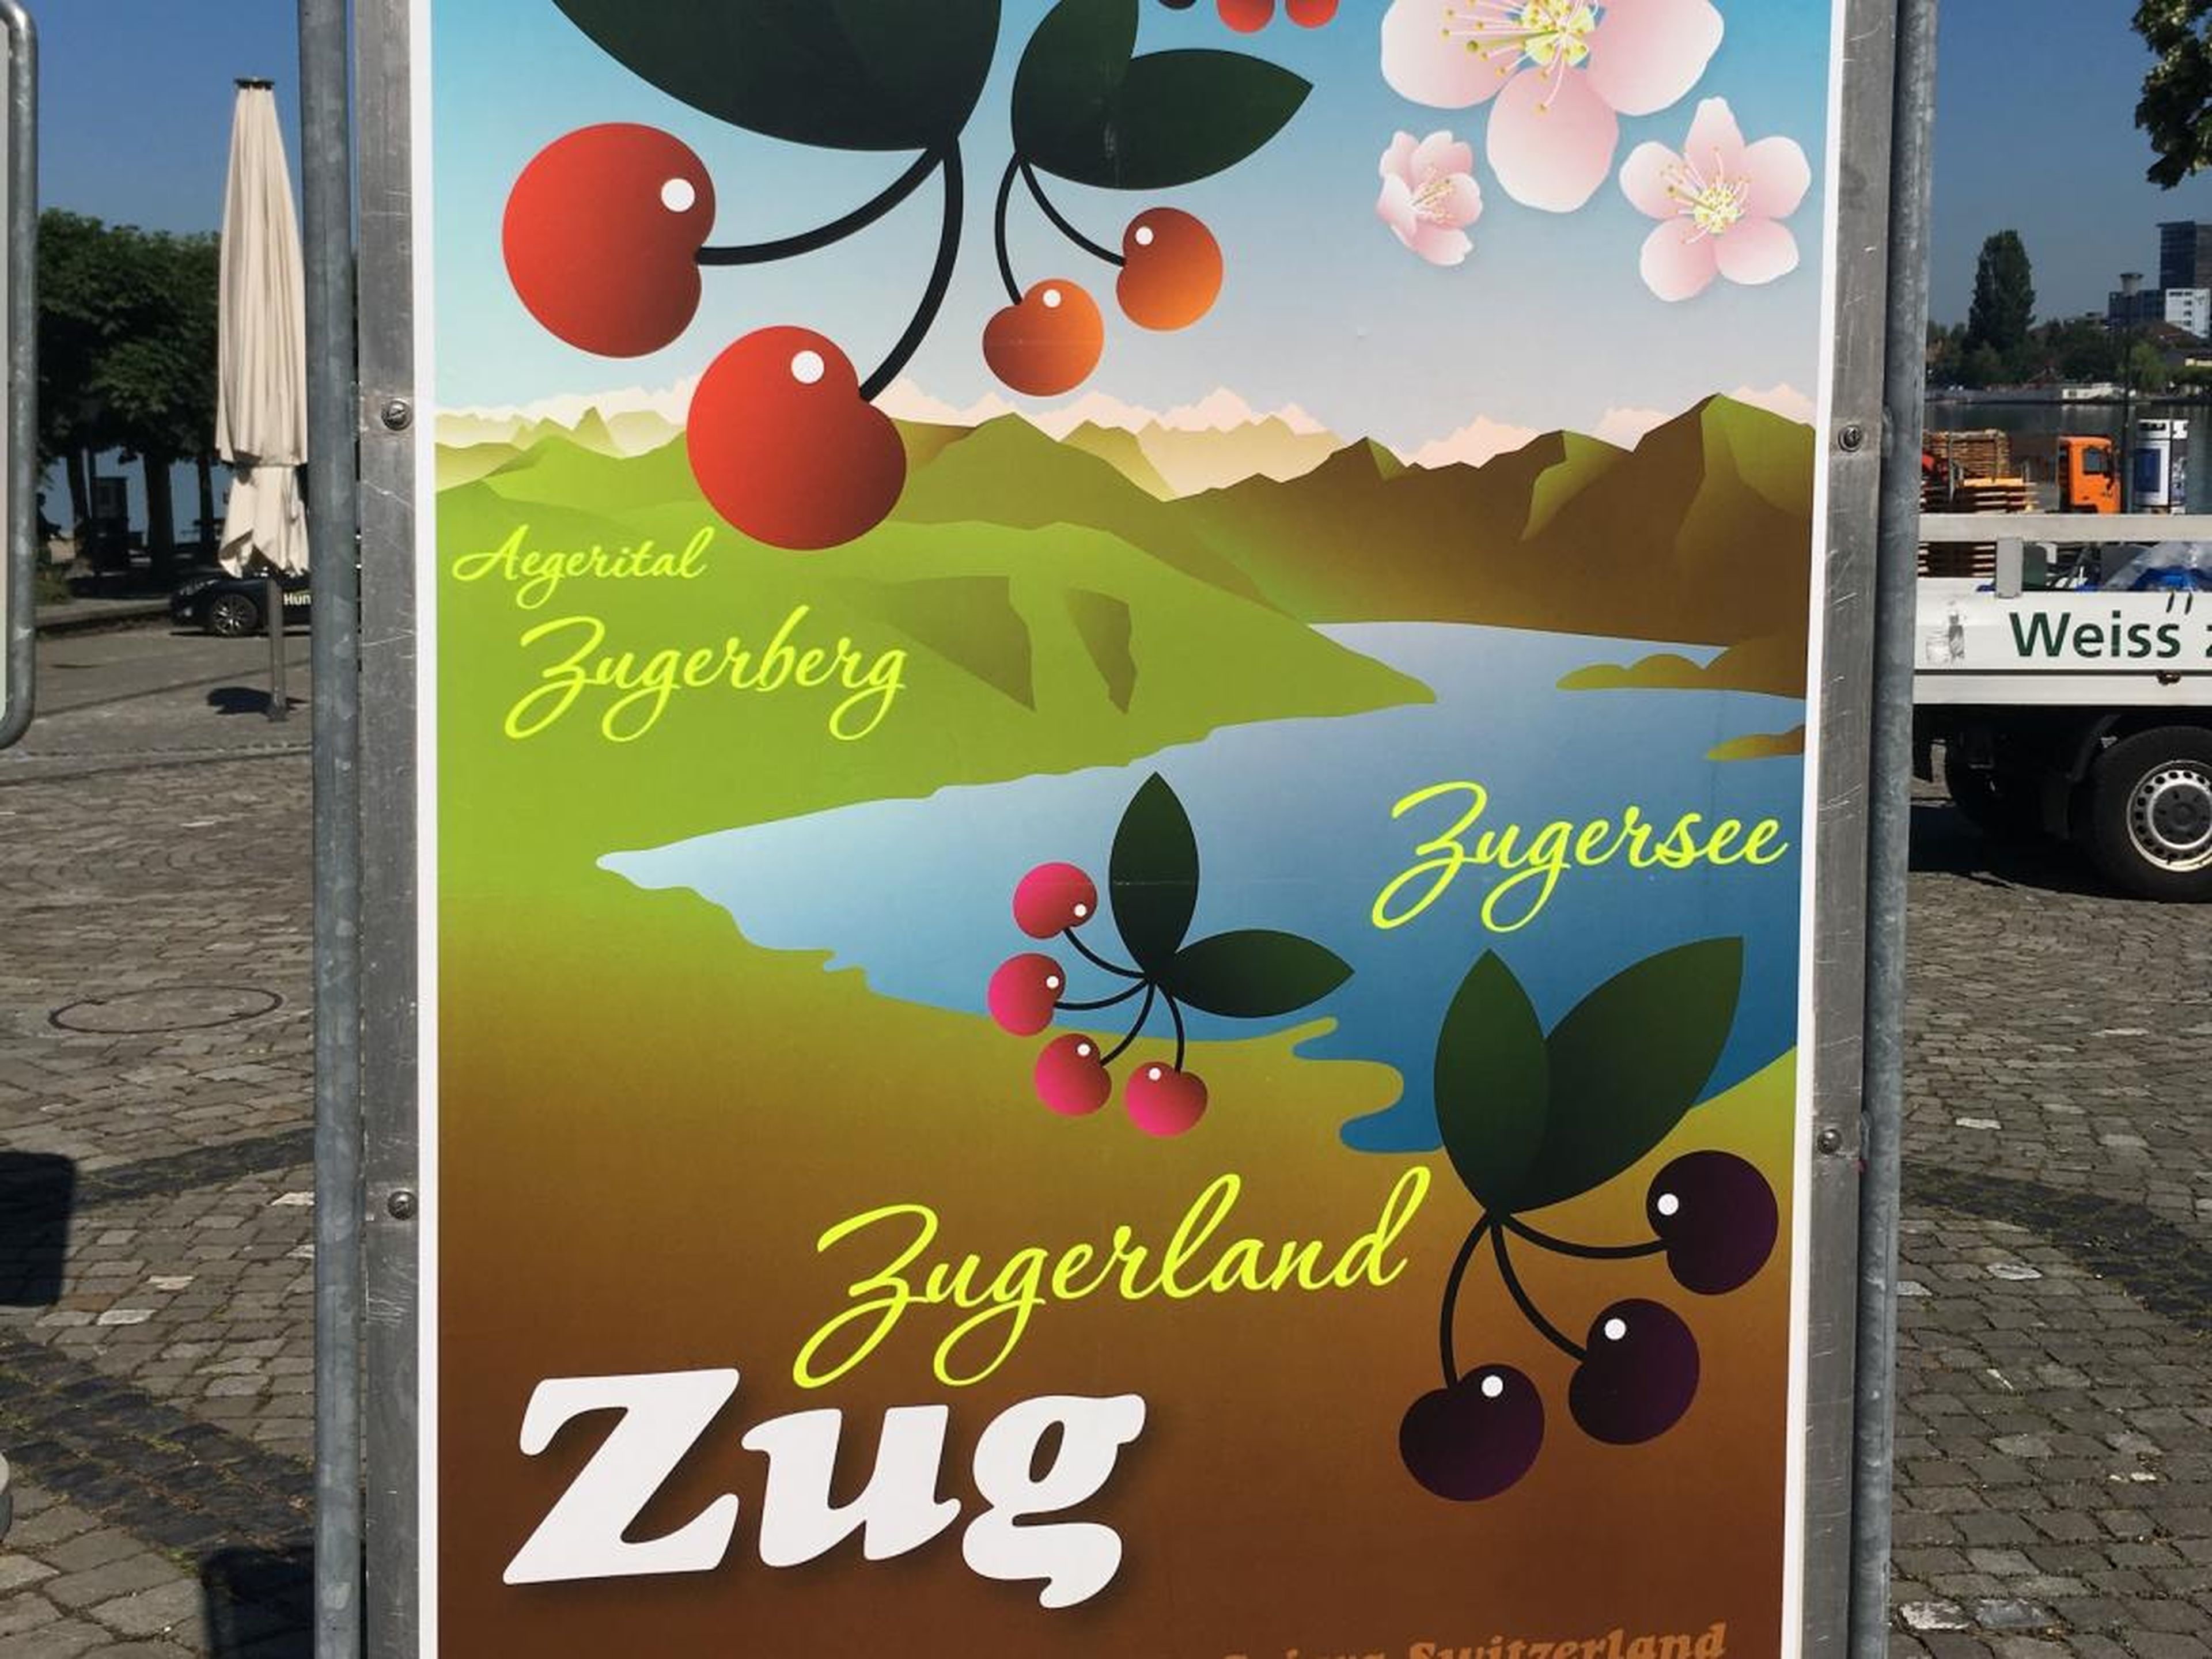 Zug es un gran productor de kirsch, el brandy de cereza.